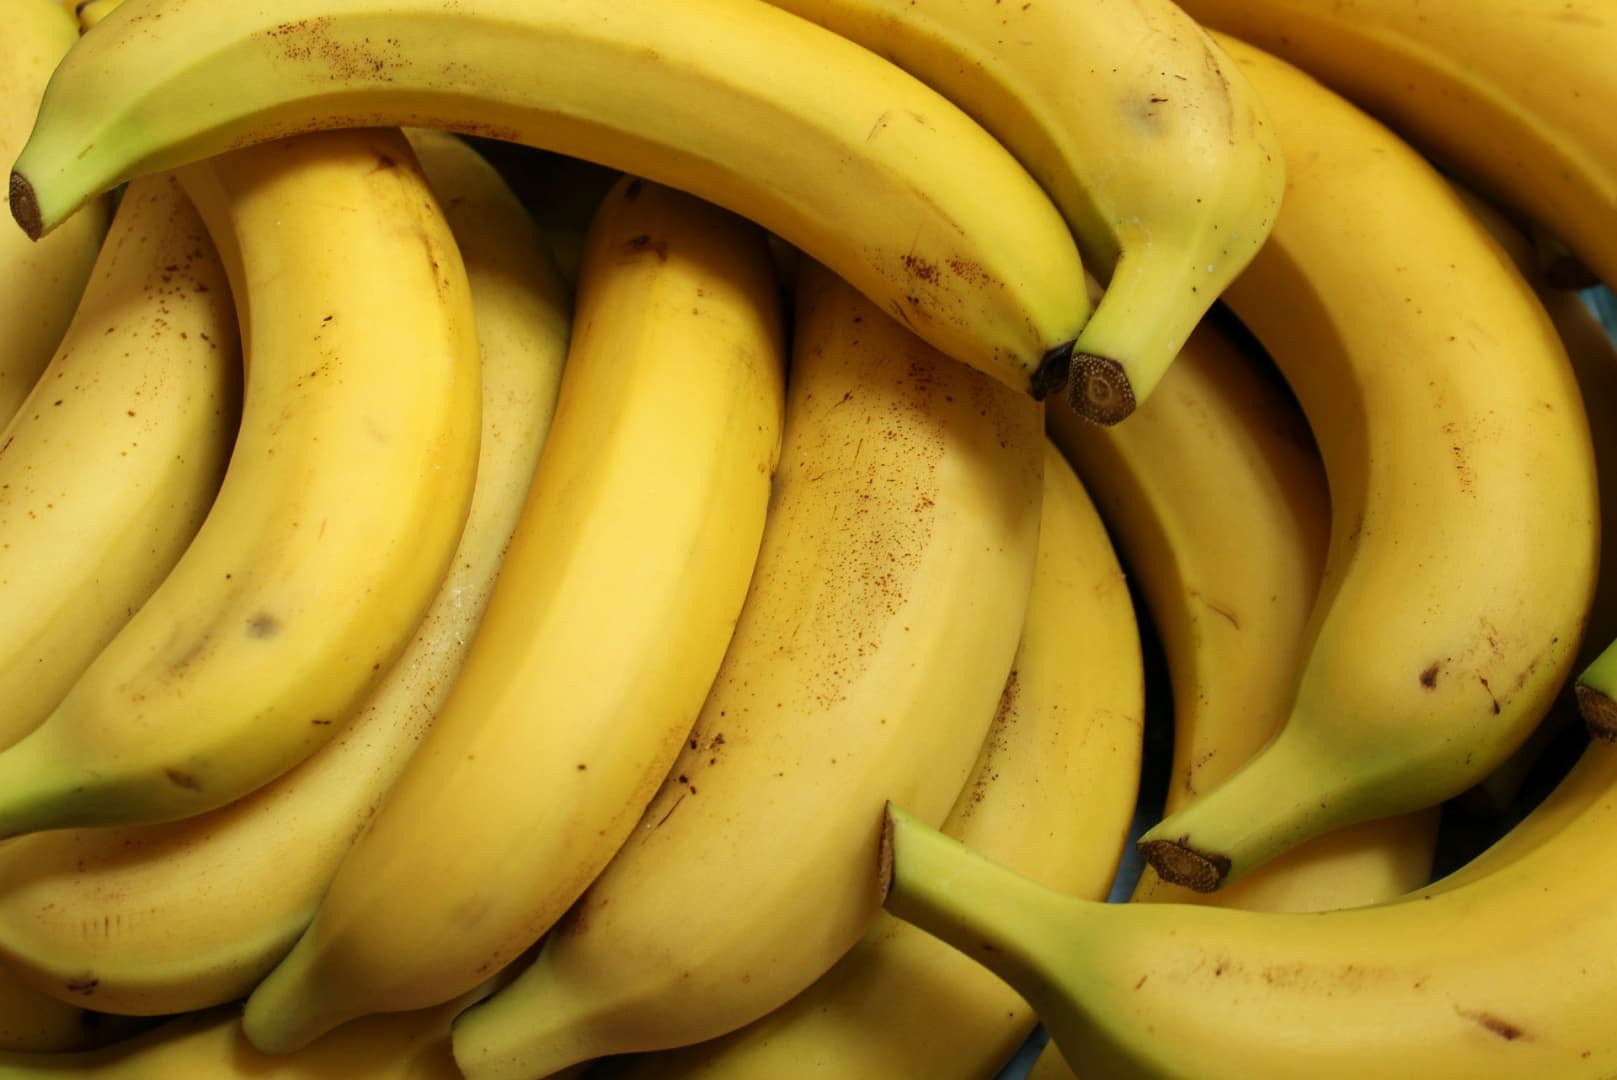 Három tonna kokaint találtak egy banánpüré-szállítmányba rejtve